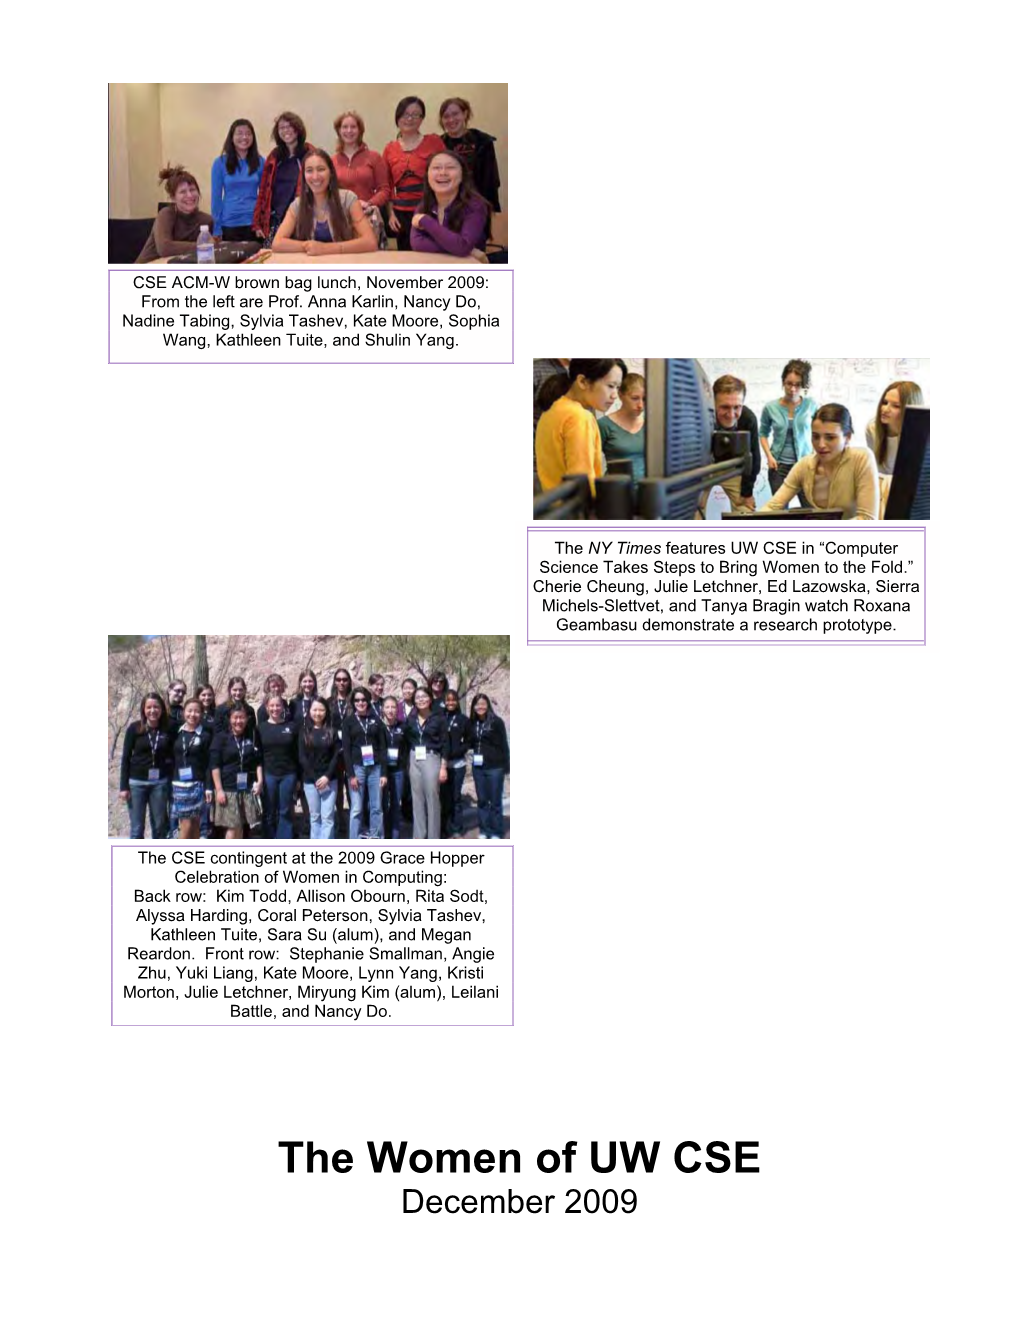 The Women of UW CSE December 2009 the Women of CSE